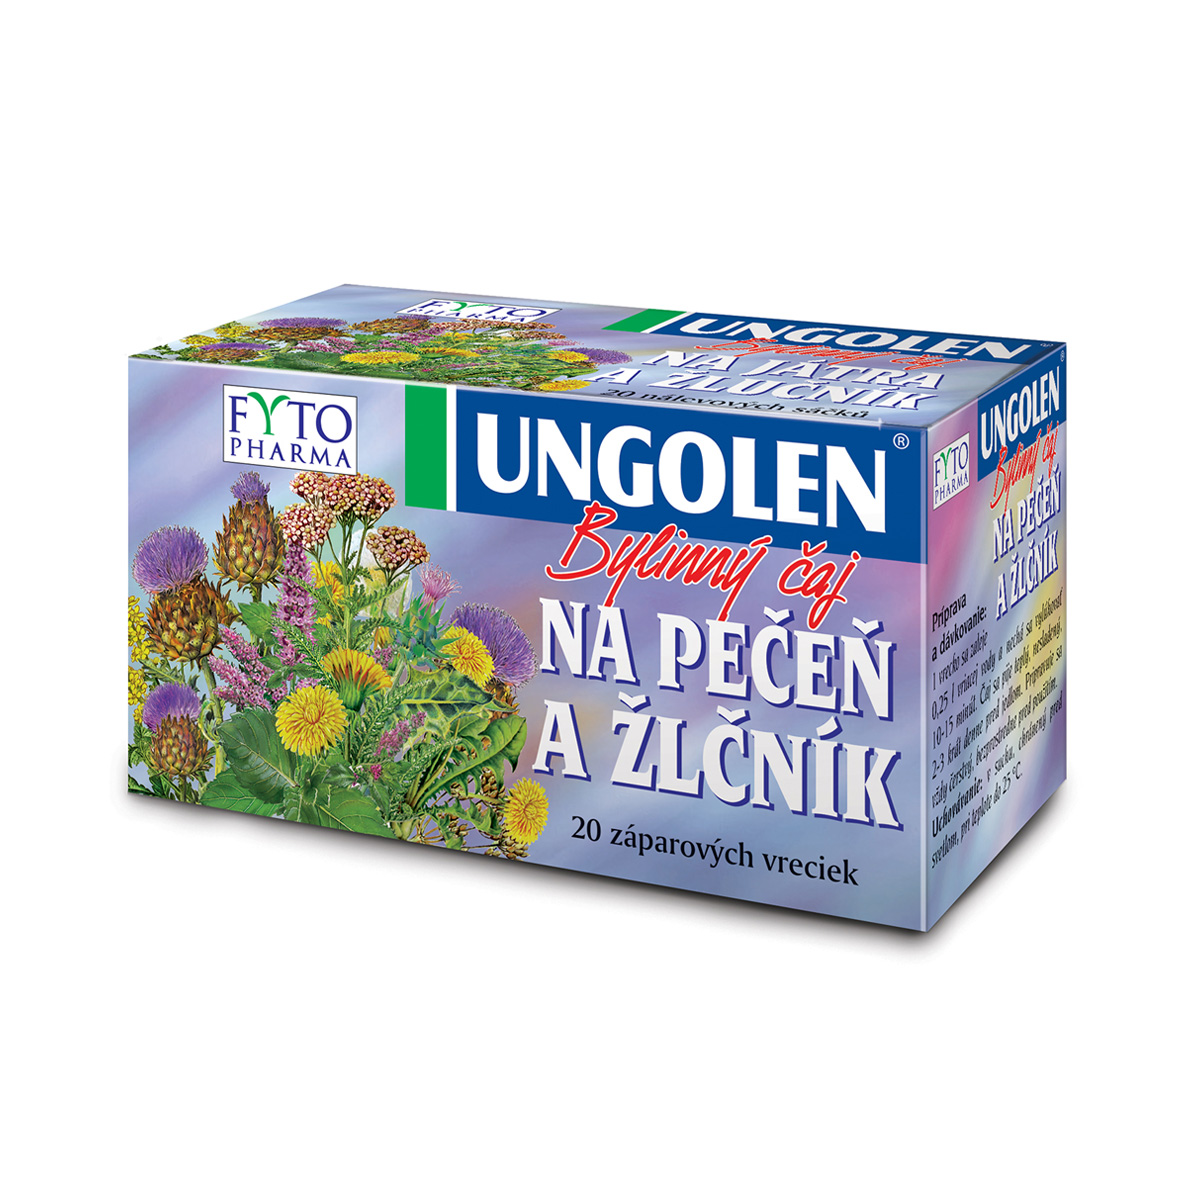 Fytopharma UNGOLEN® bylinný čaj na játra a žlučník 20 x 1,5 g